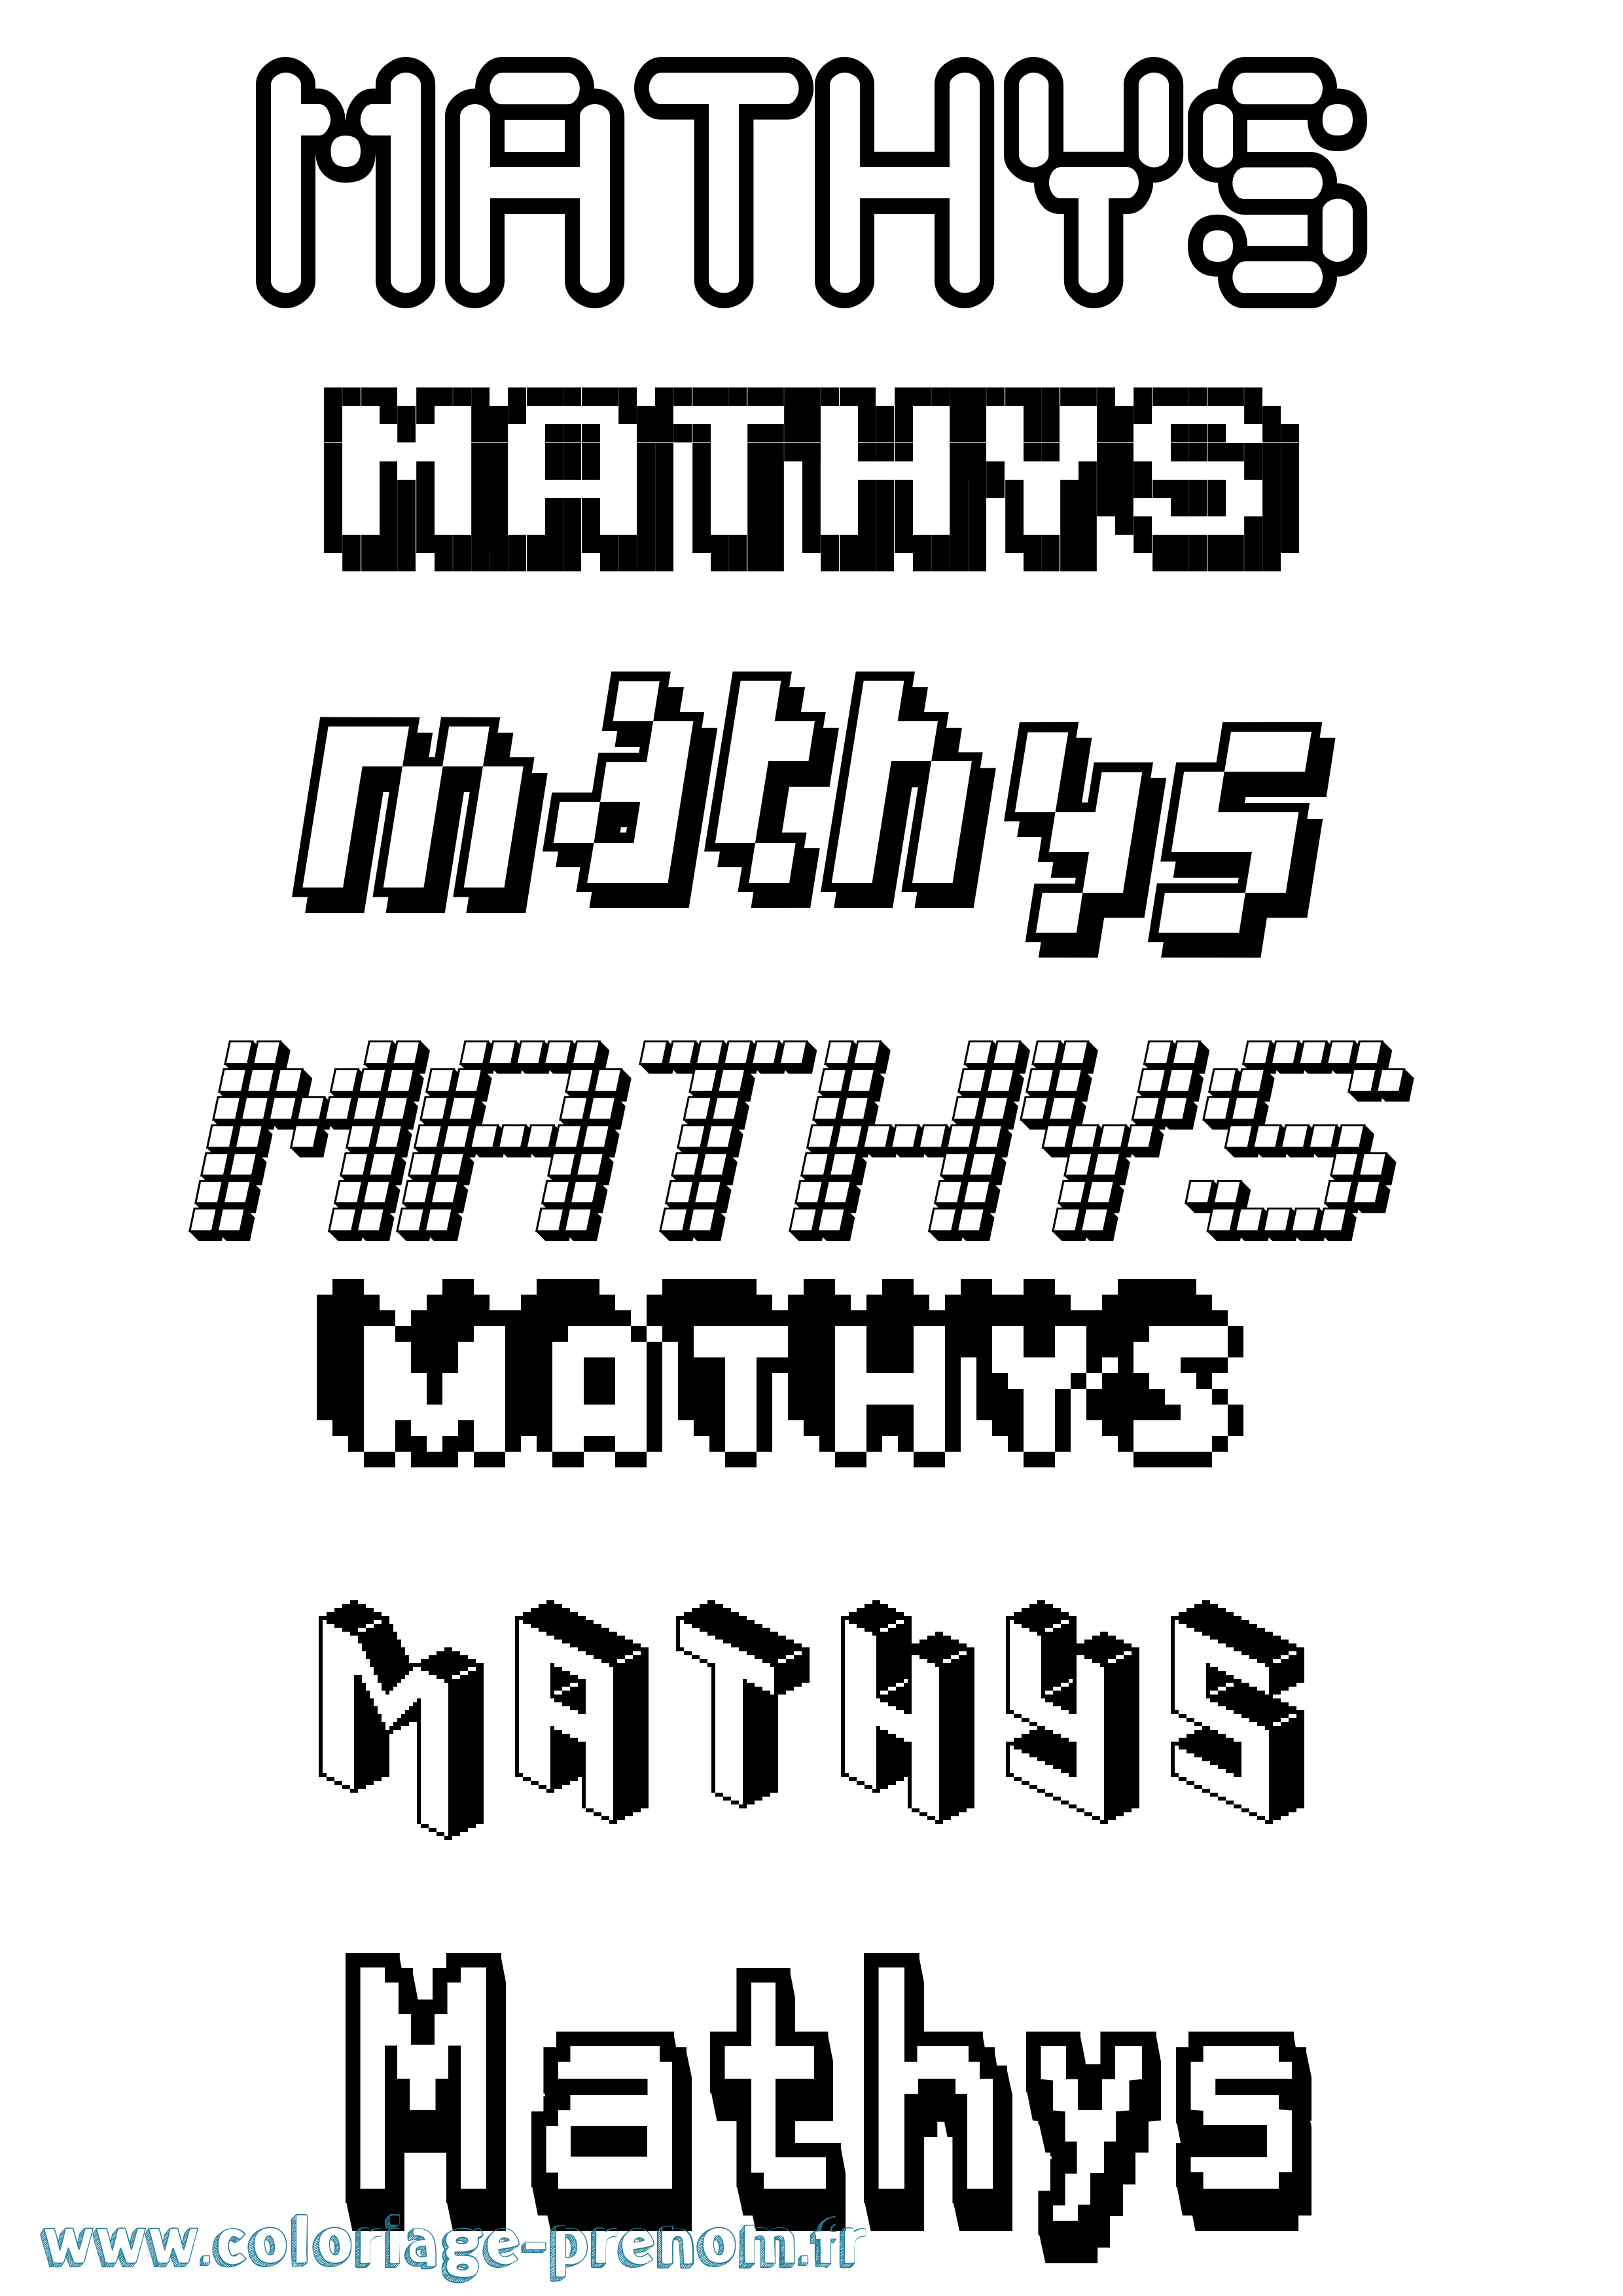 Coloriage prénom Mathys Pixel